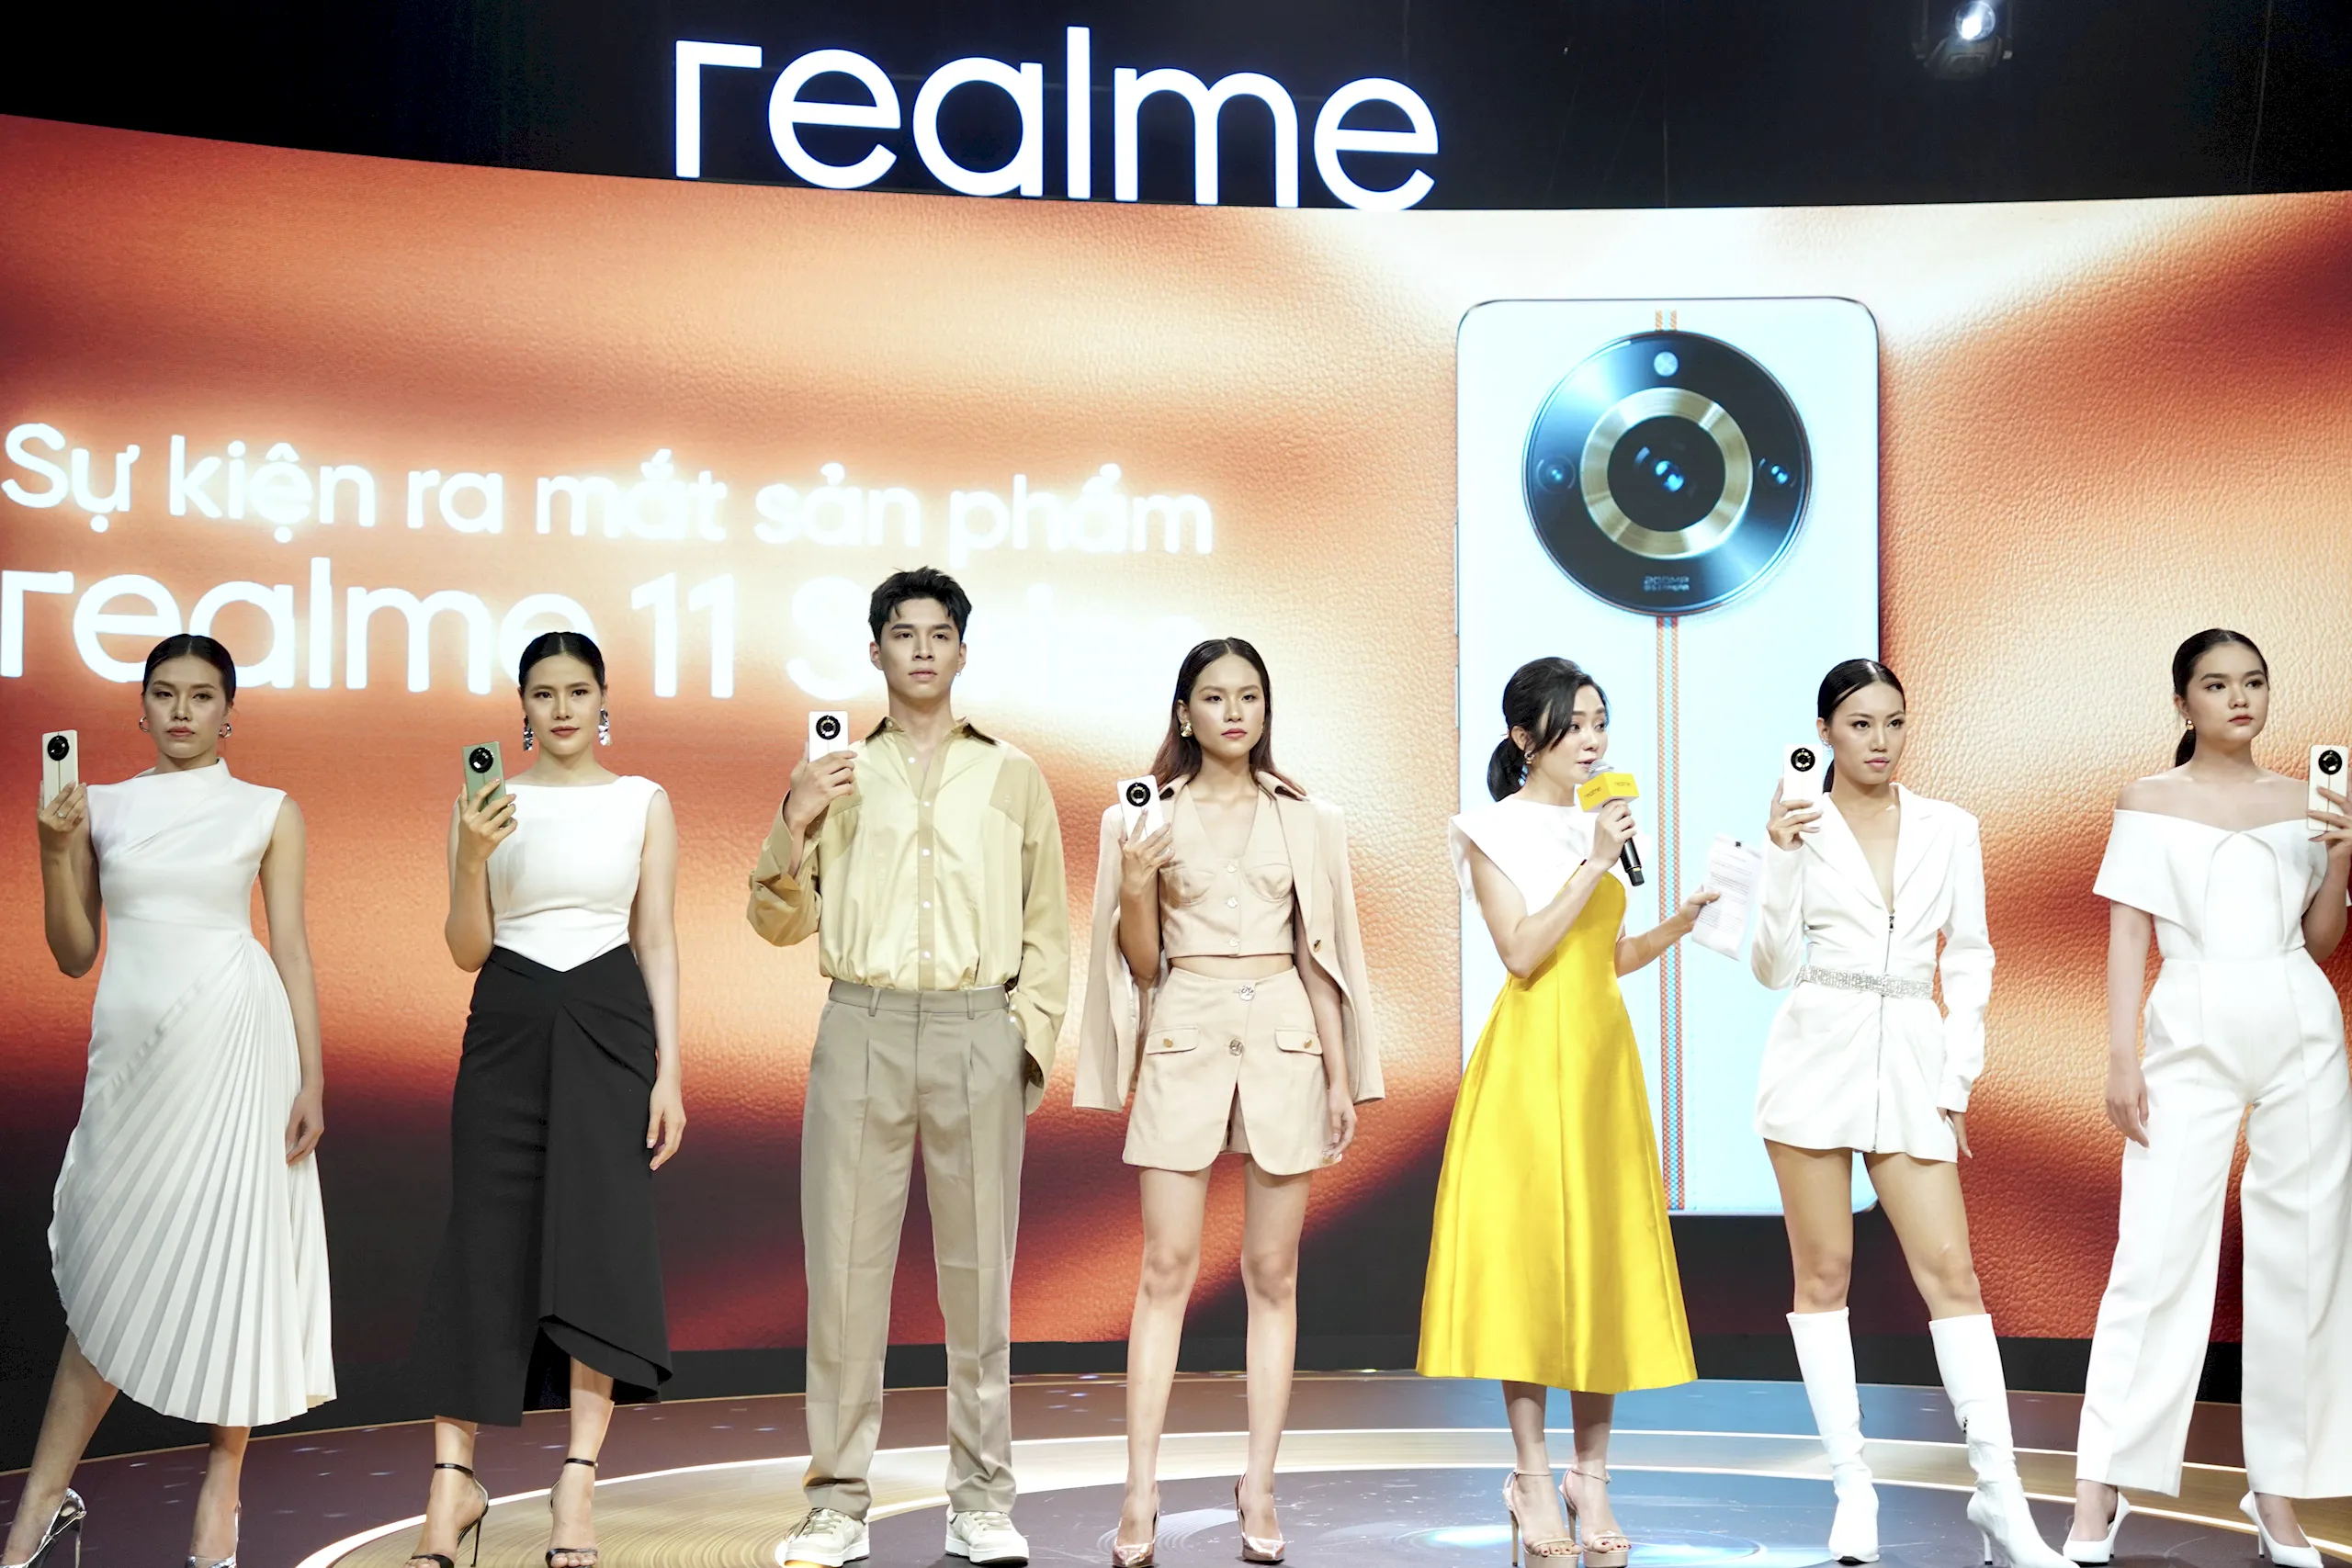 realme 11 series chính thức ra mắt tại Việt Nam với giá từ 7,390,000 VND